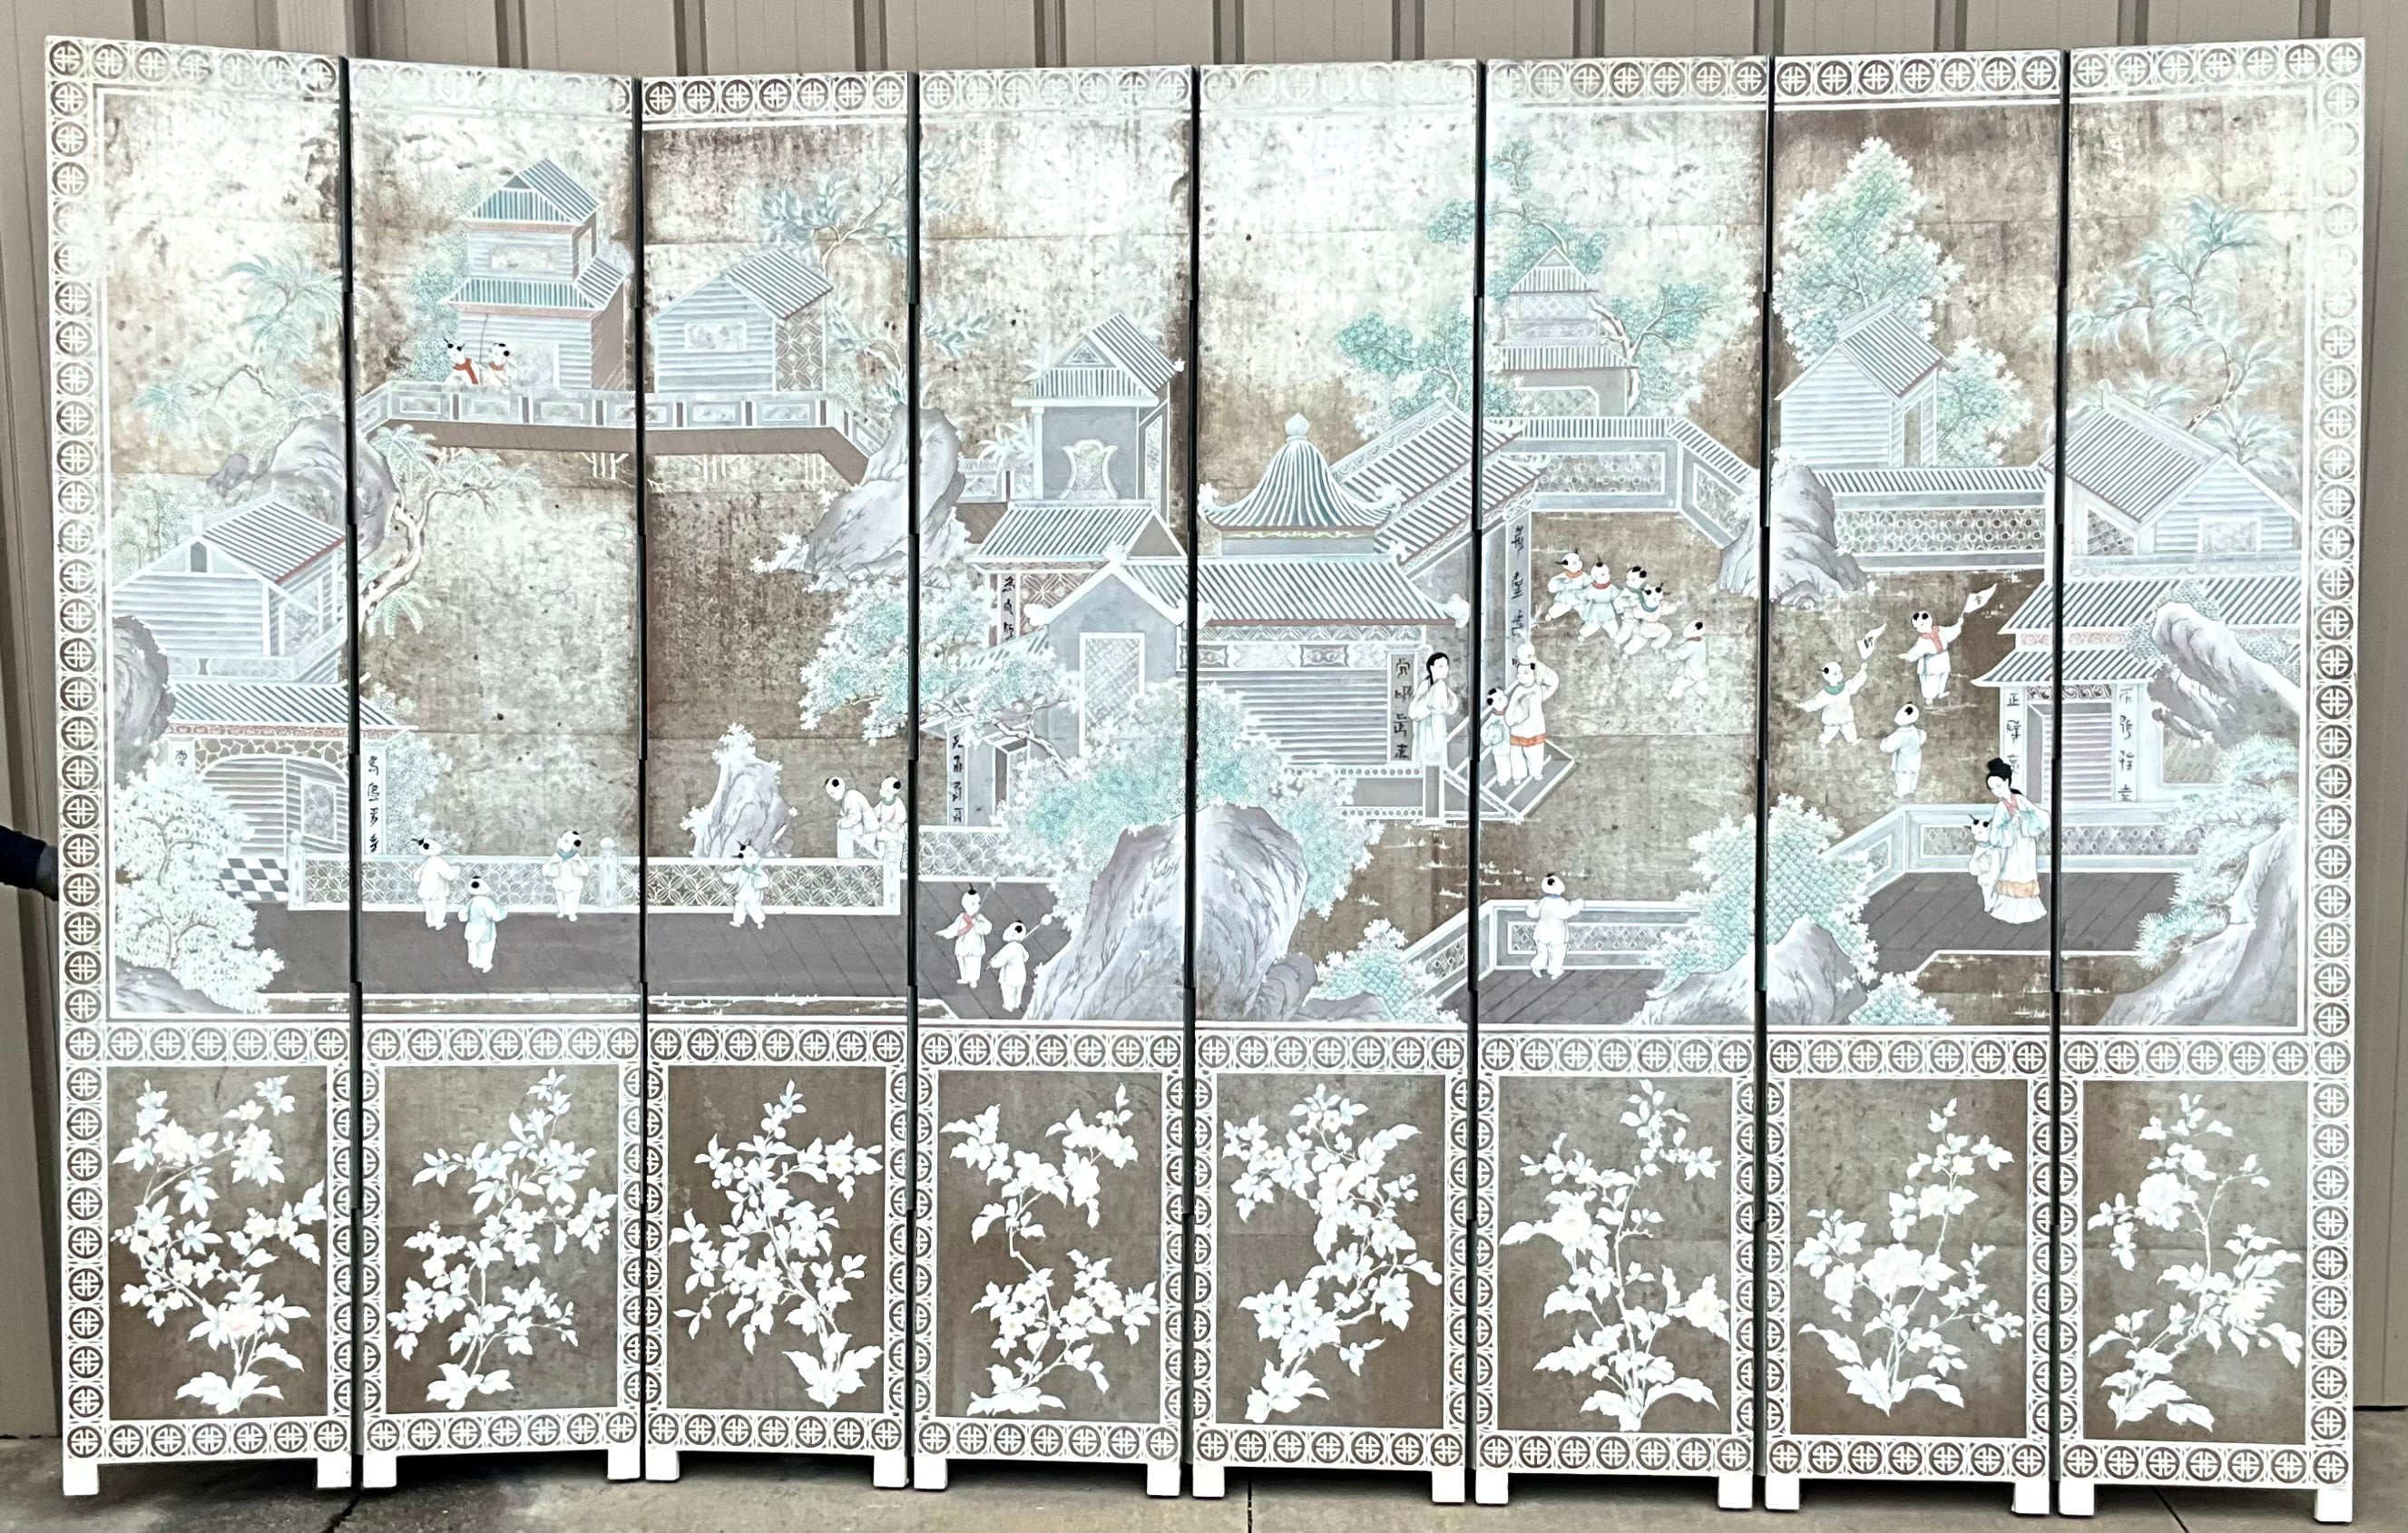 Ich liebe diesen Bildschirm! Mit acht Tafeln, die eine Höhe von 94 Zoll erreichen, ist es von monumentalem Ausmaß. Es handelt sich um handgemalte Chinoiserie-Szenen auf Silberfolienpapier, die an die schönen Werke von Gracie erinnern. Die